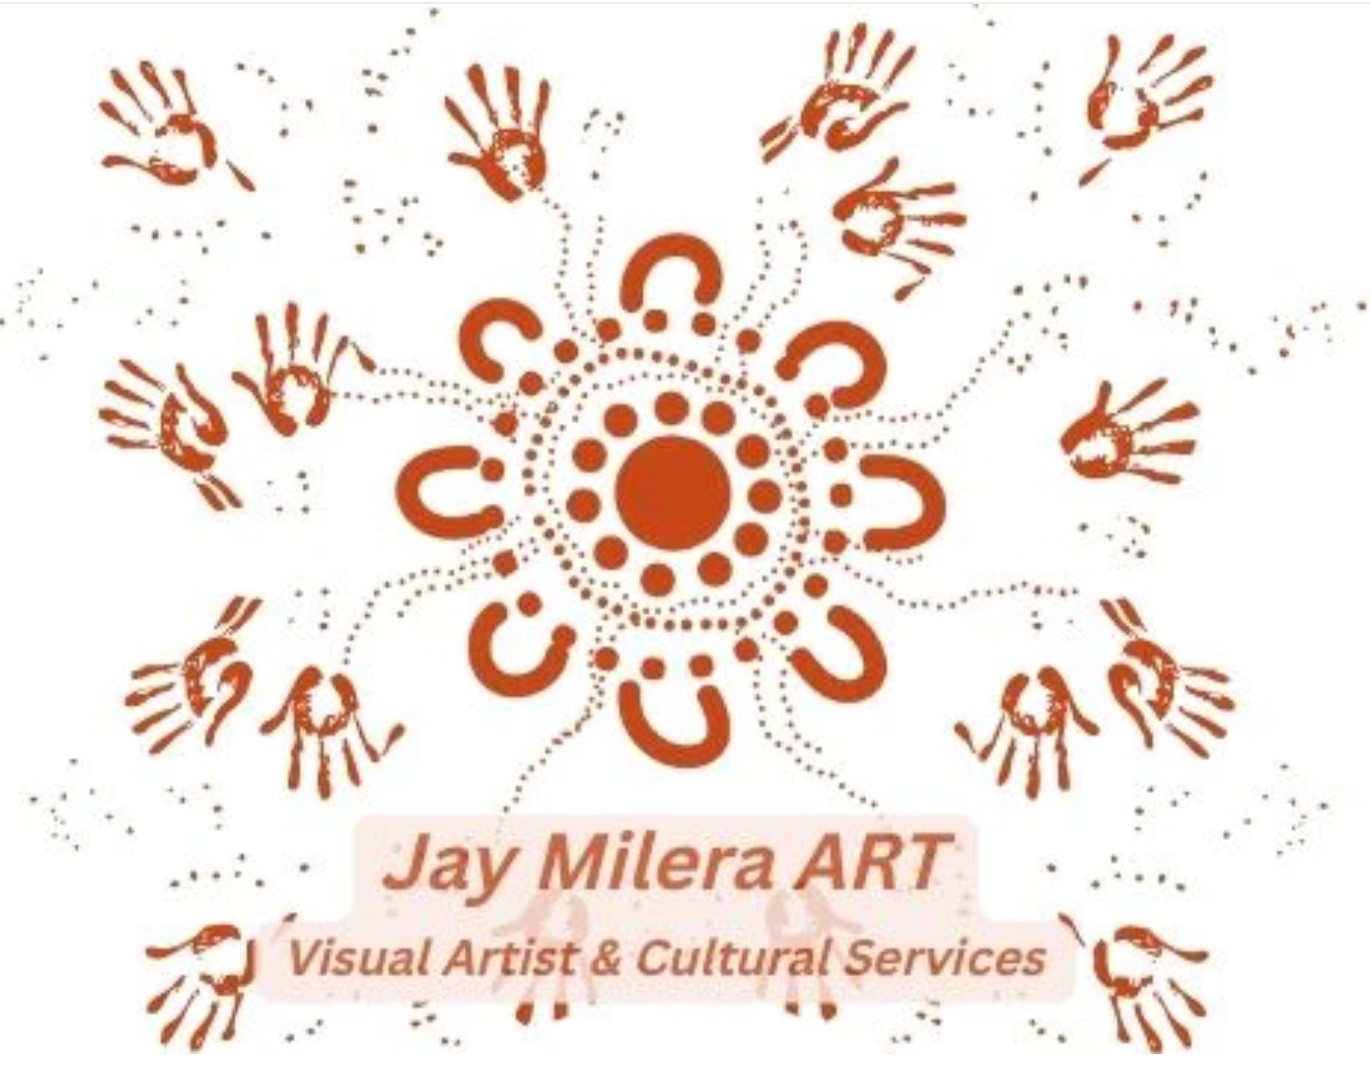 Jay Milera Art